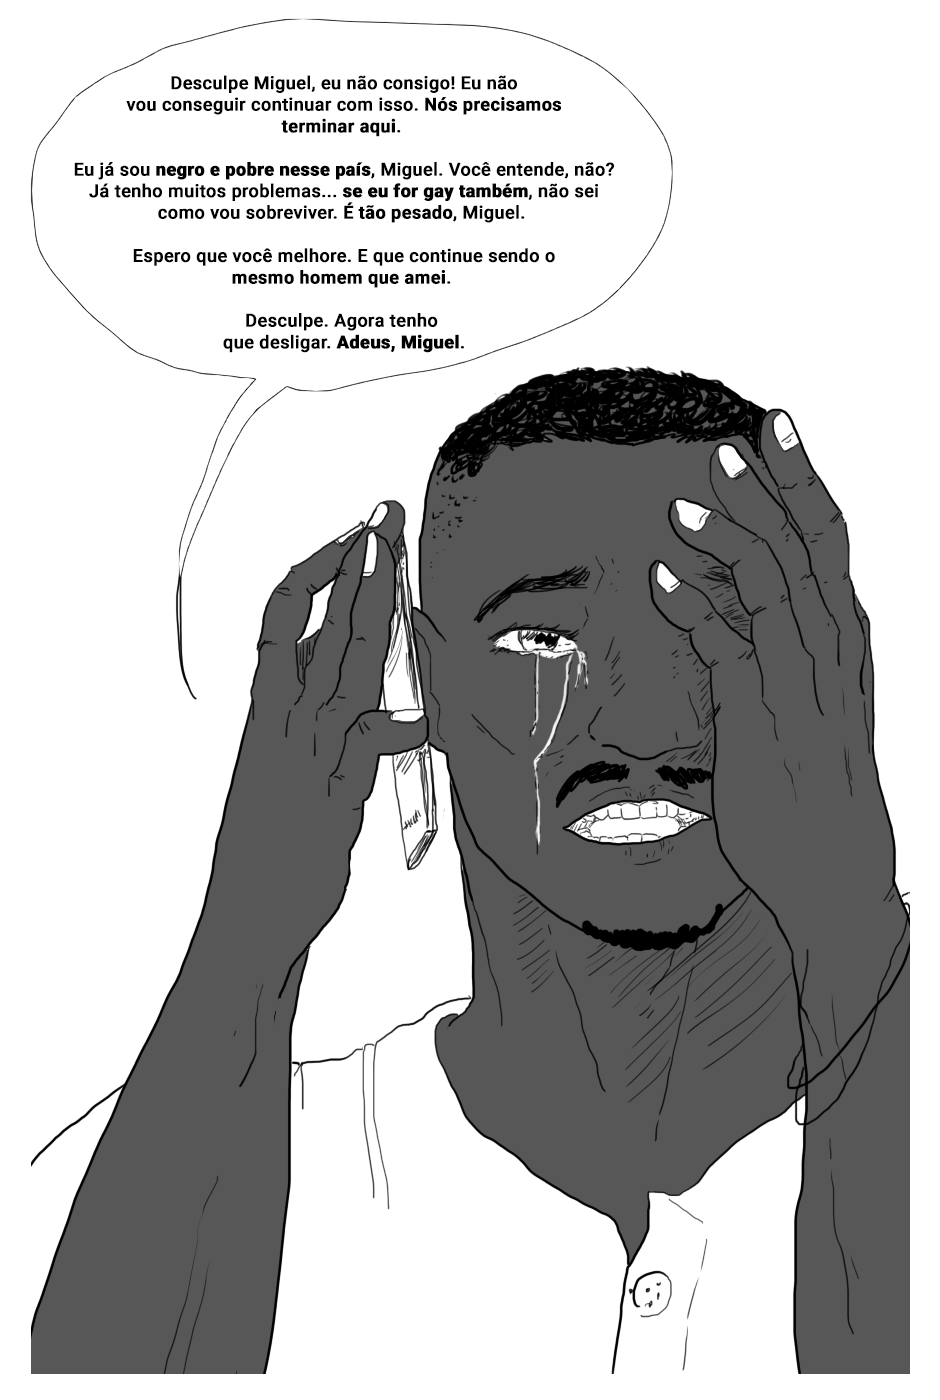 quadrinho hq futebol LGBT preconceito web comic Ilustração p&b social